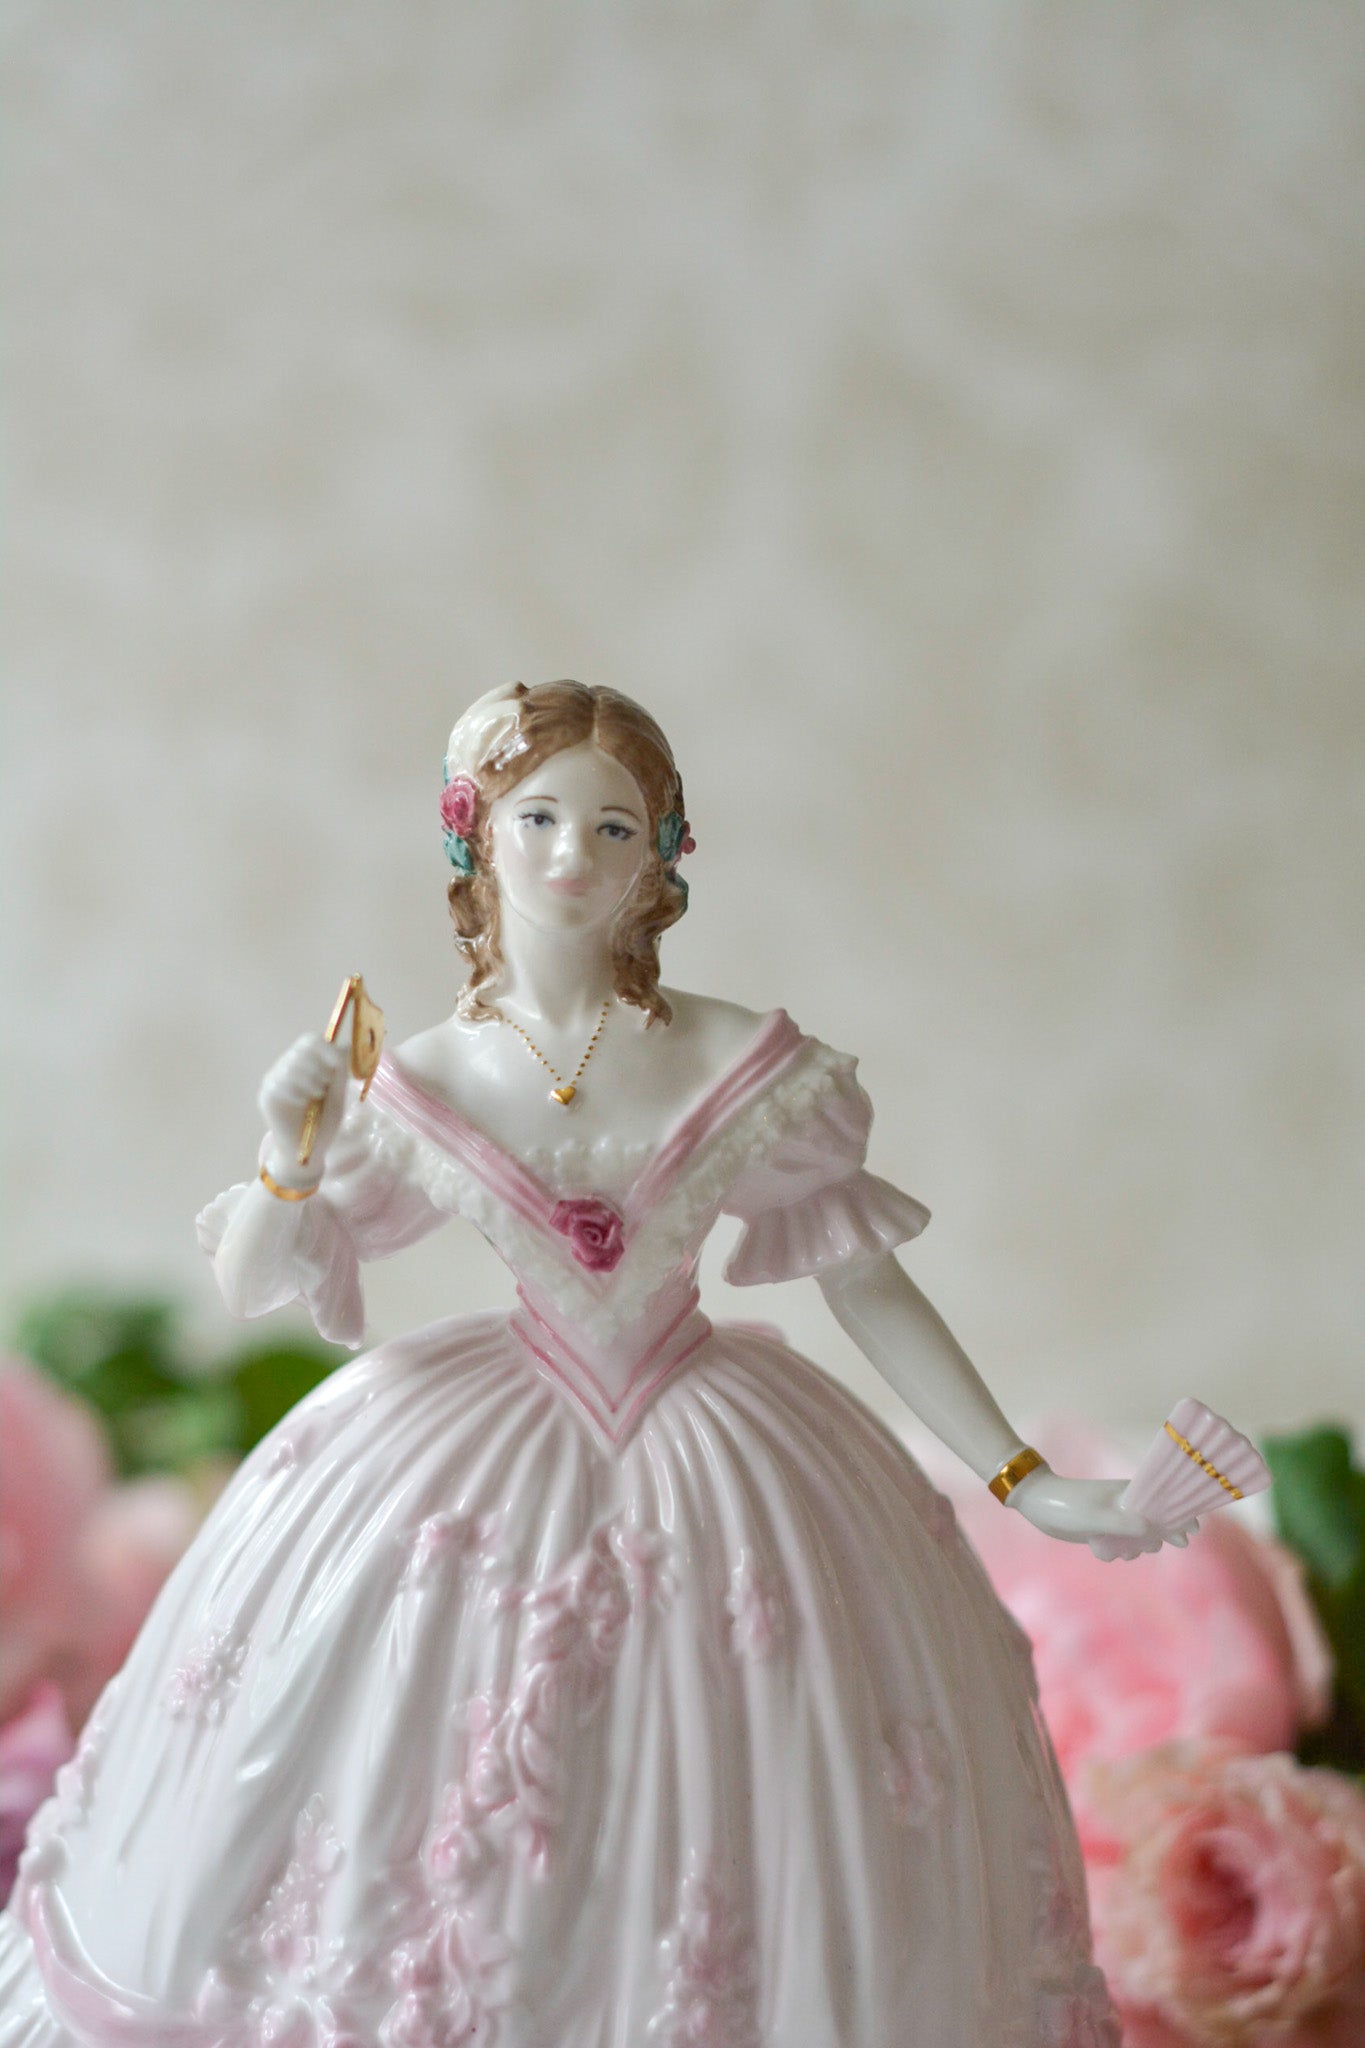 英国、ロイヤルウースターのフィギュリン。フィギュリンは陶器でできたお人形で、ポーセリンドールとも呼ばれています。華やかで美しいフィギュリンです。